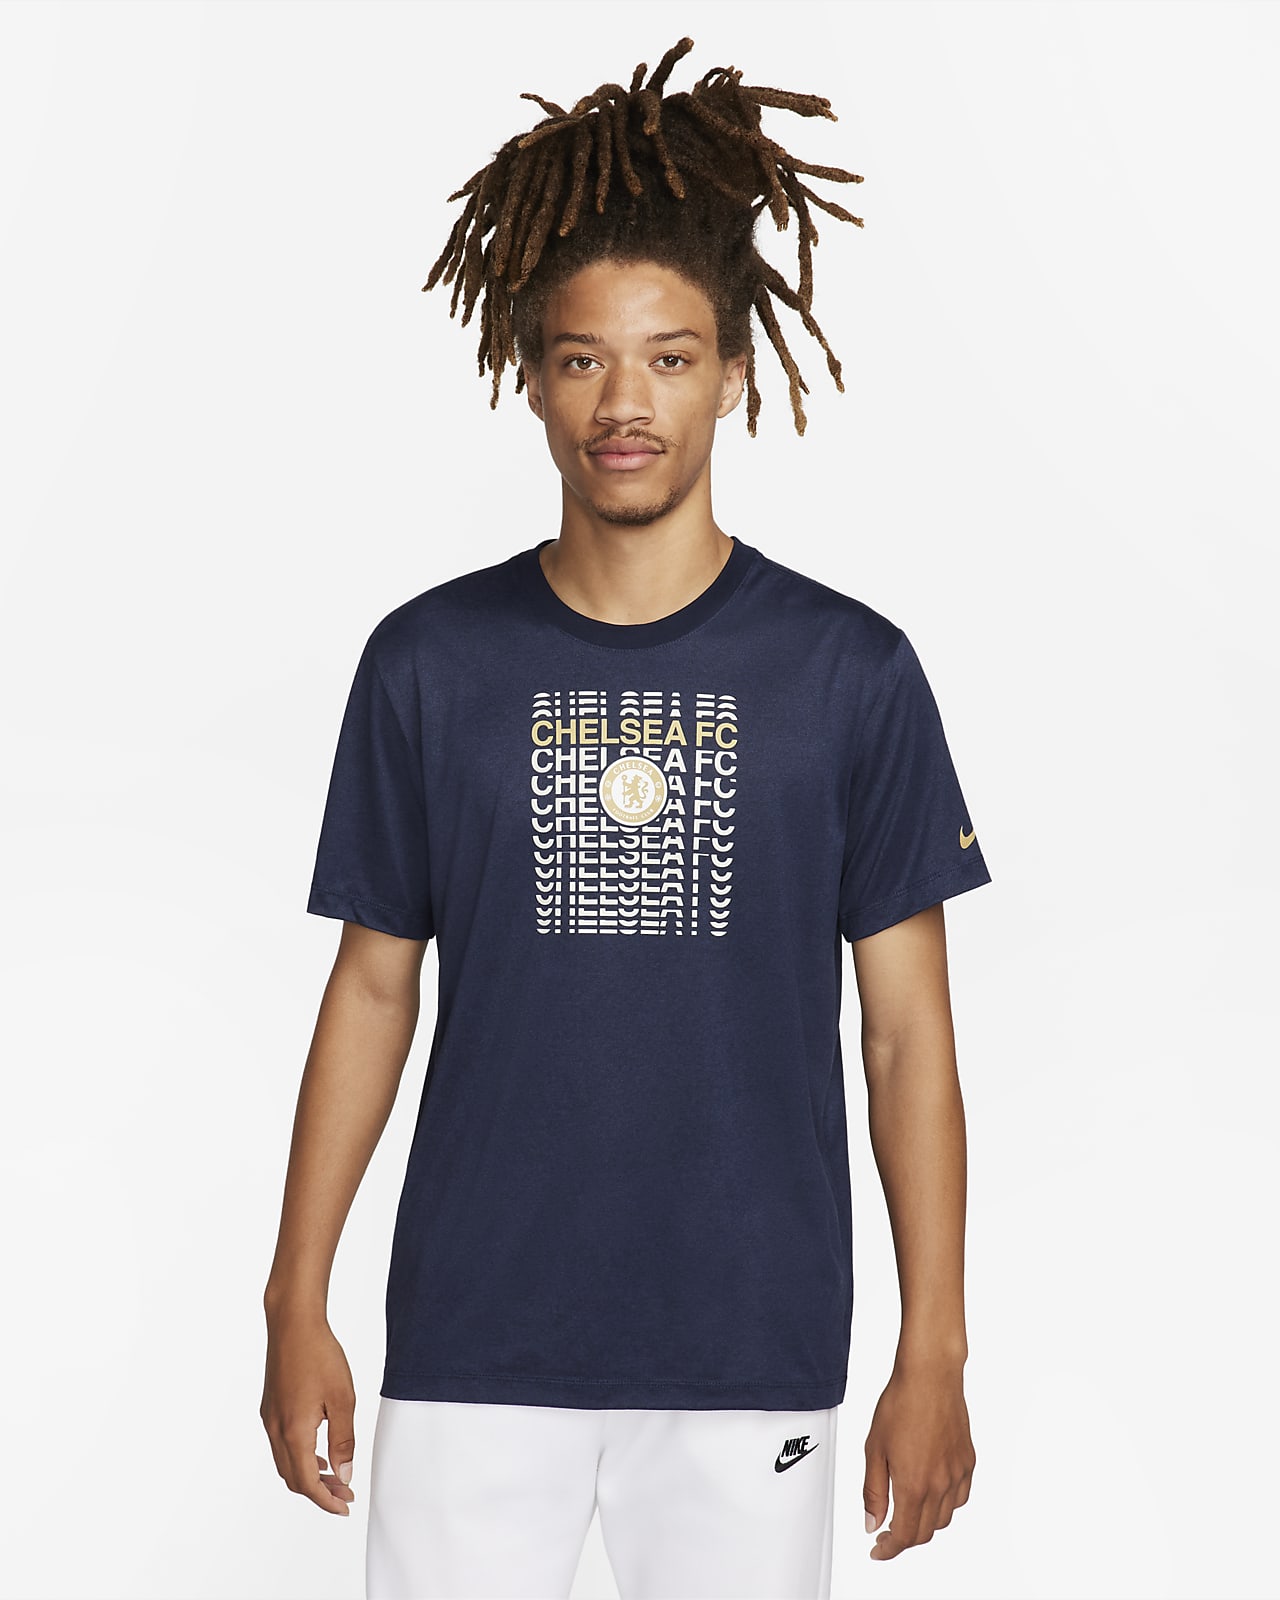 Chelsea FC Men's Nike Soccer T-Shirt